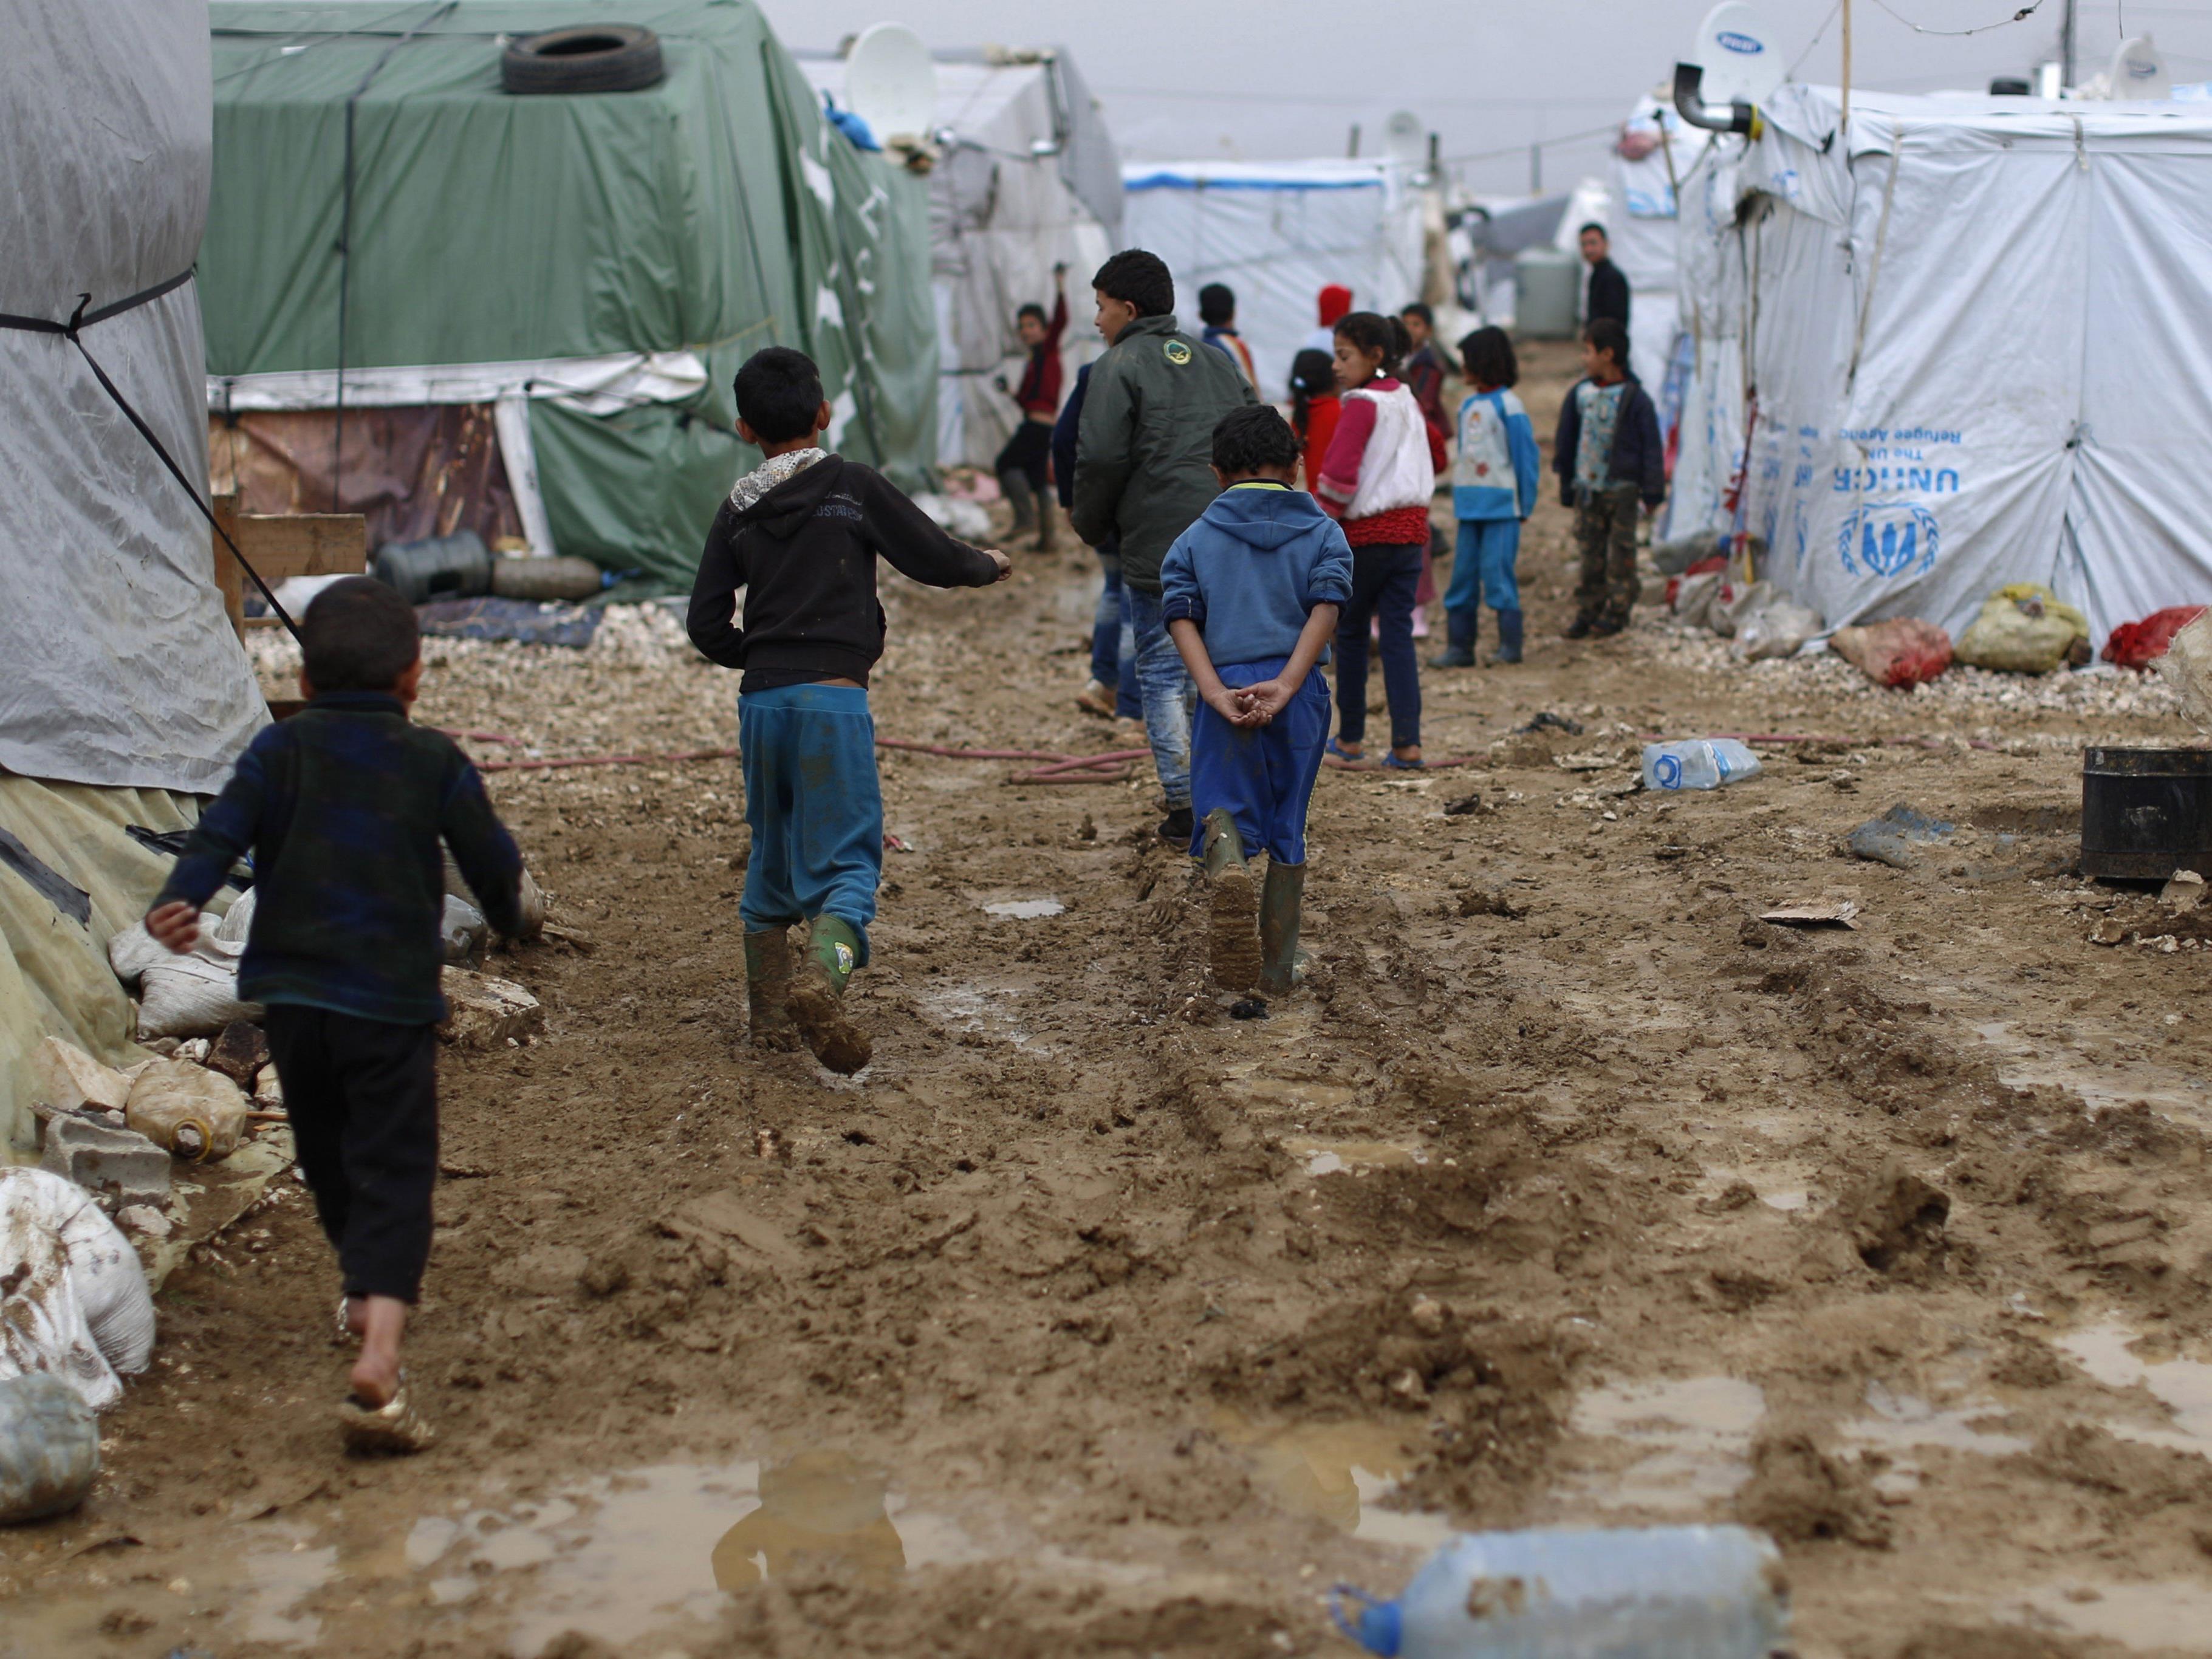 Die Bedingungen in den Flüchtlingslagern im Nahen Osten seien prekär.